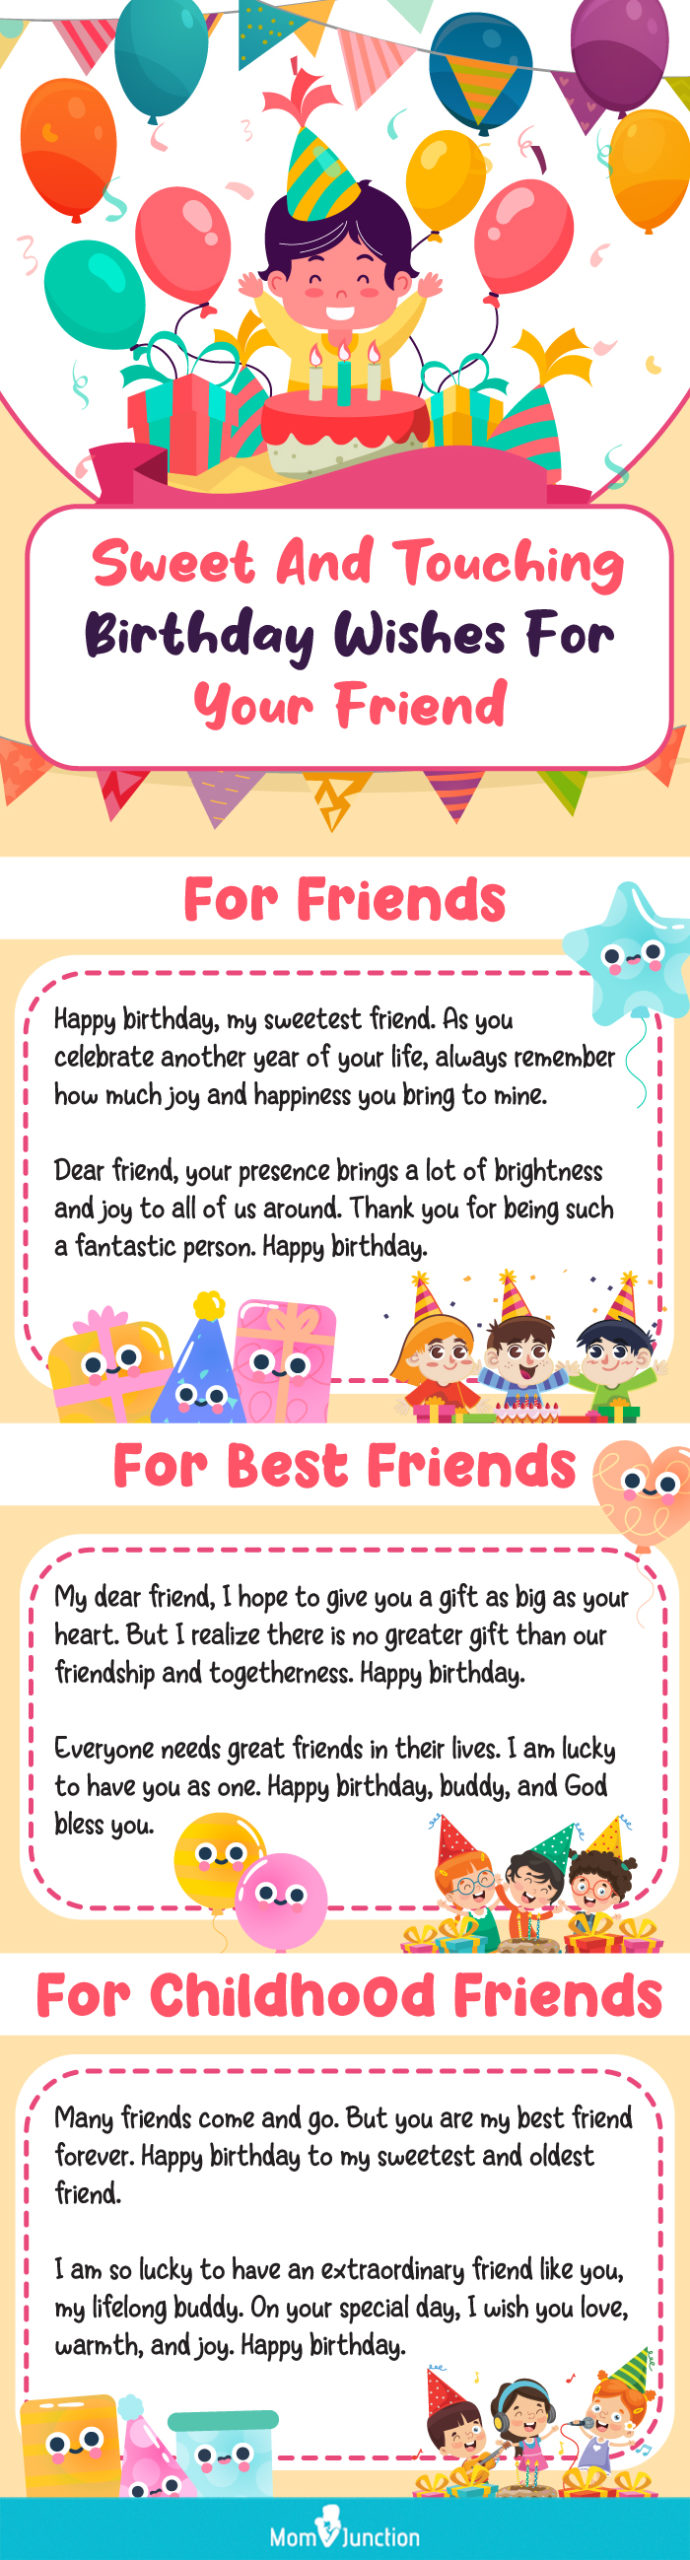 happy birthday to you friend wishes